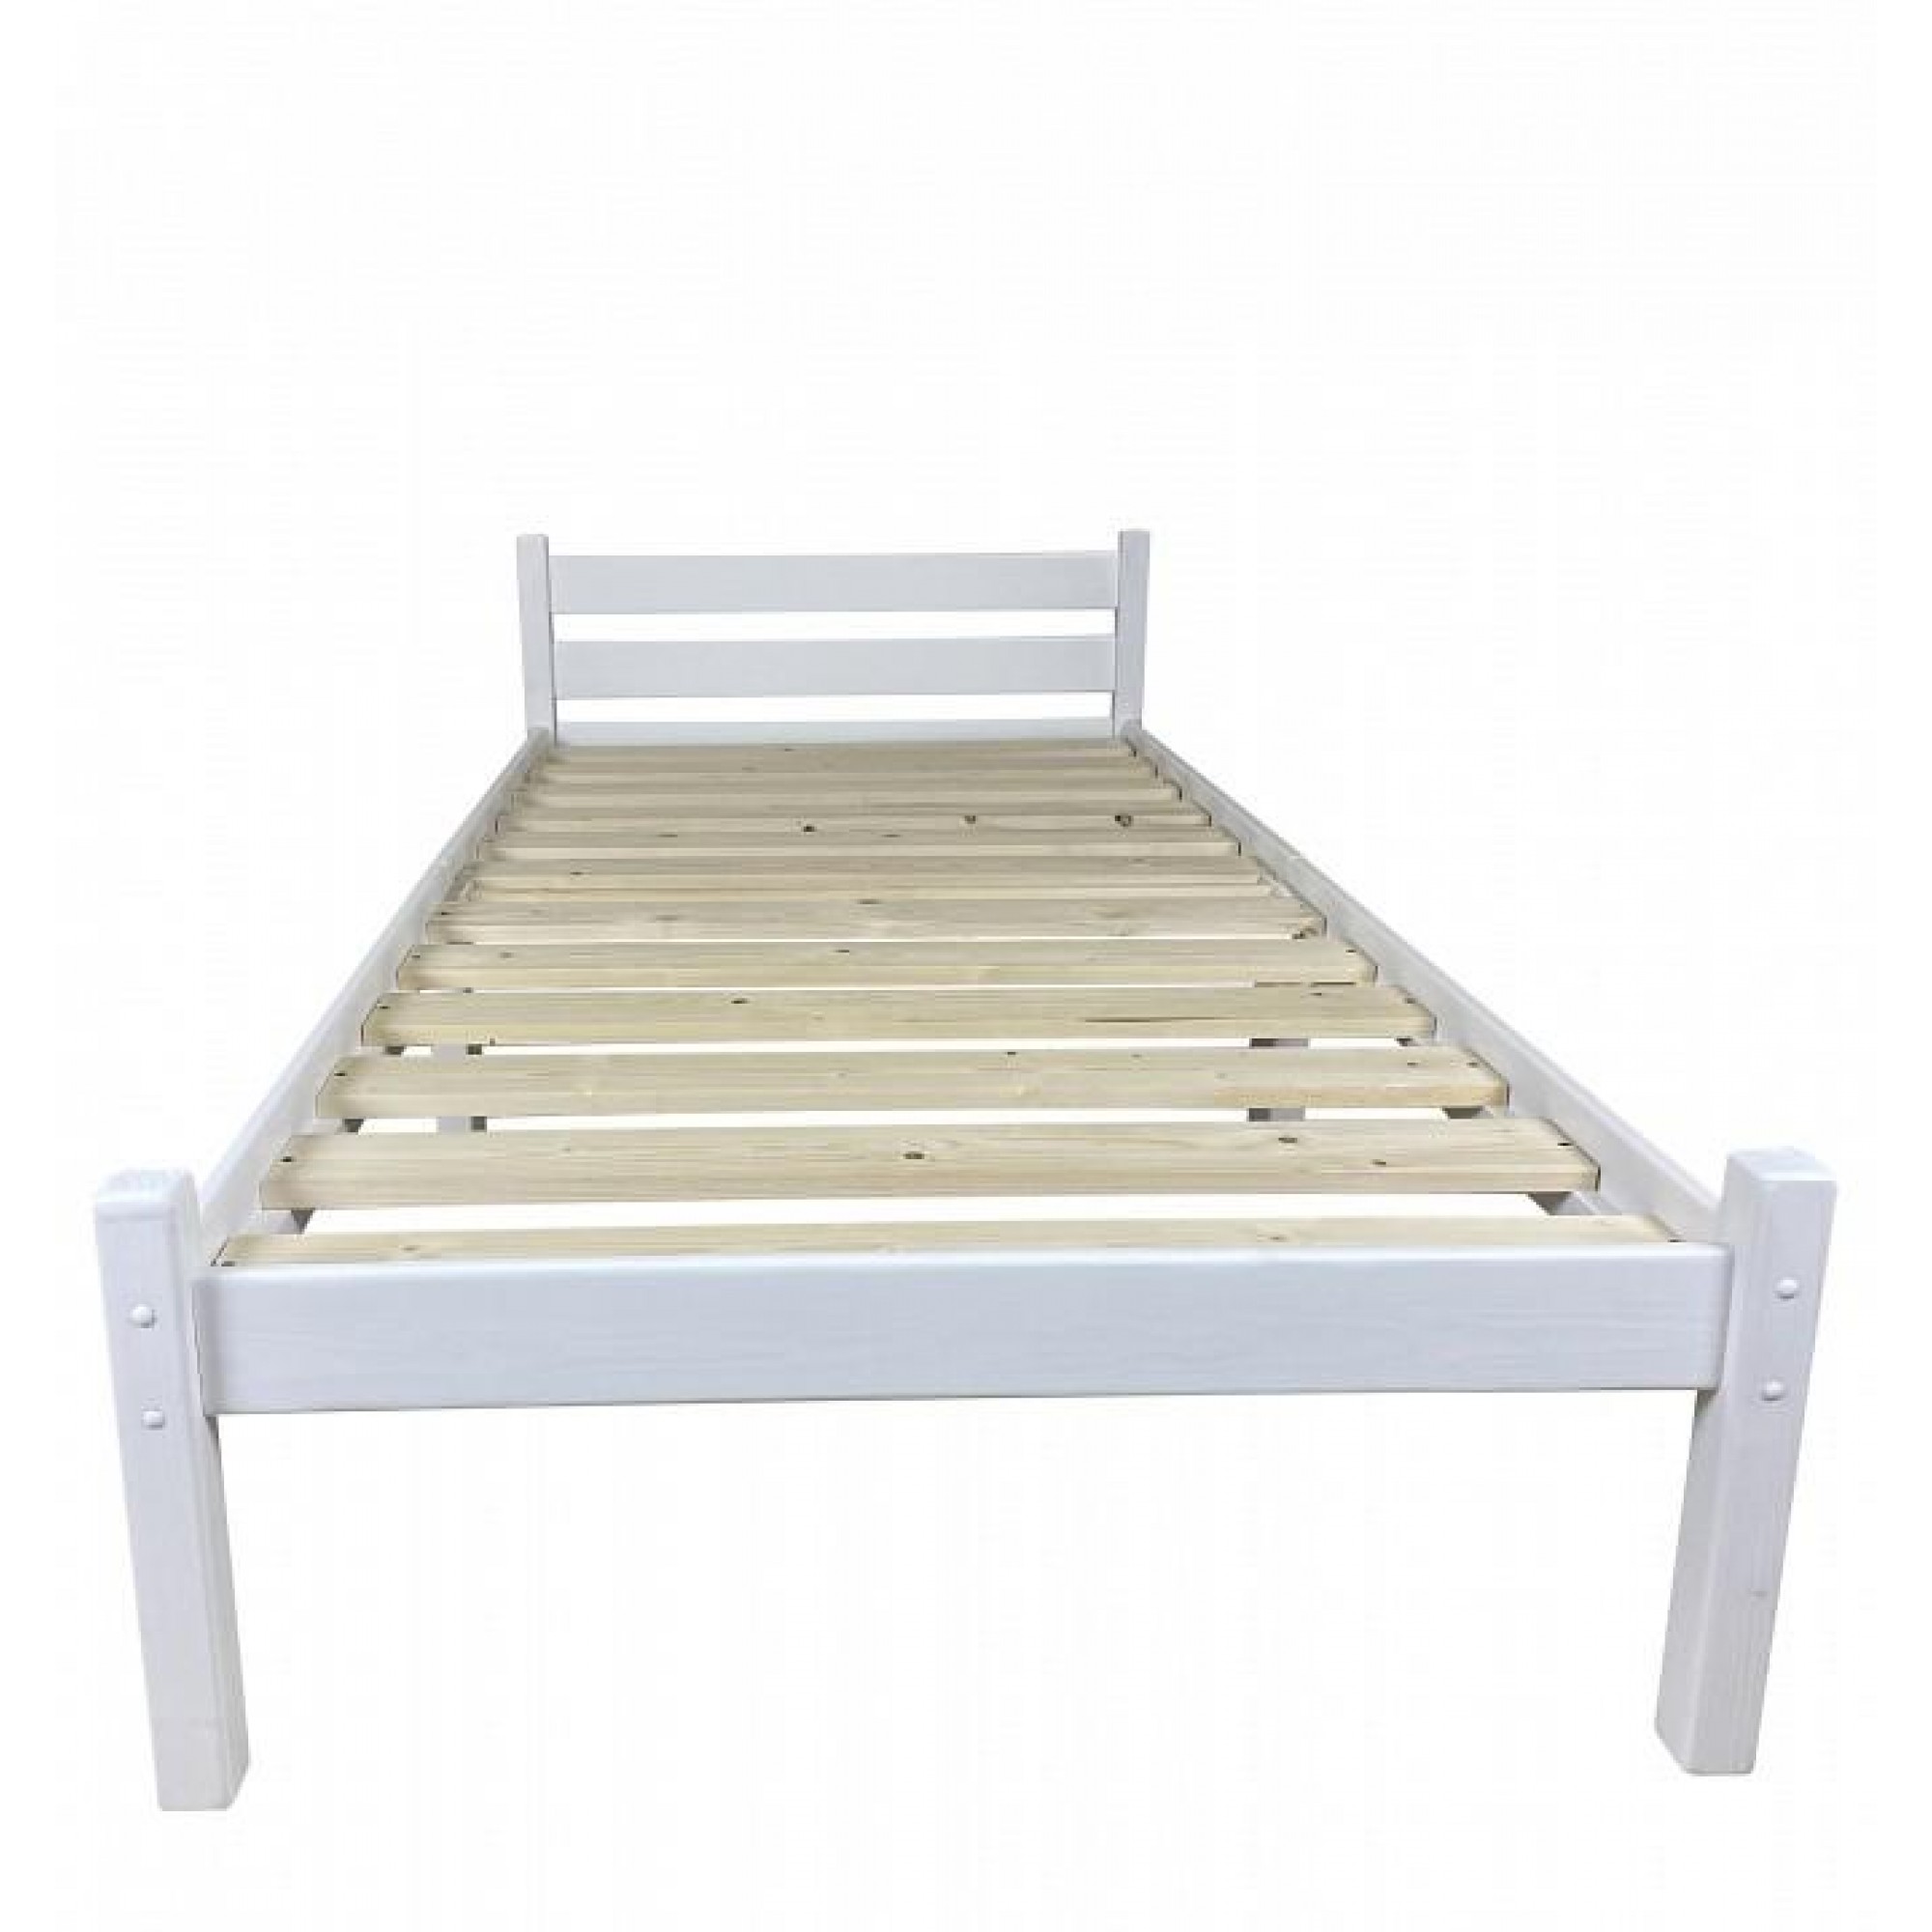 Кровать односпальная Компакт 2000x600 белый    SLR_kompakt60bel